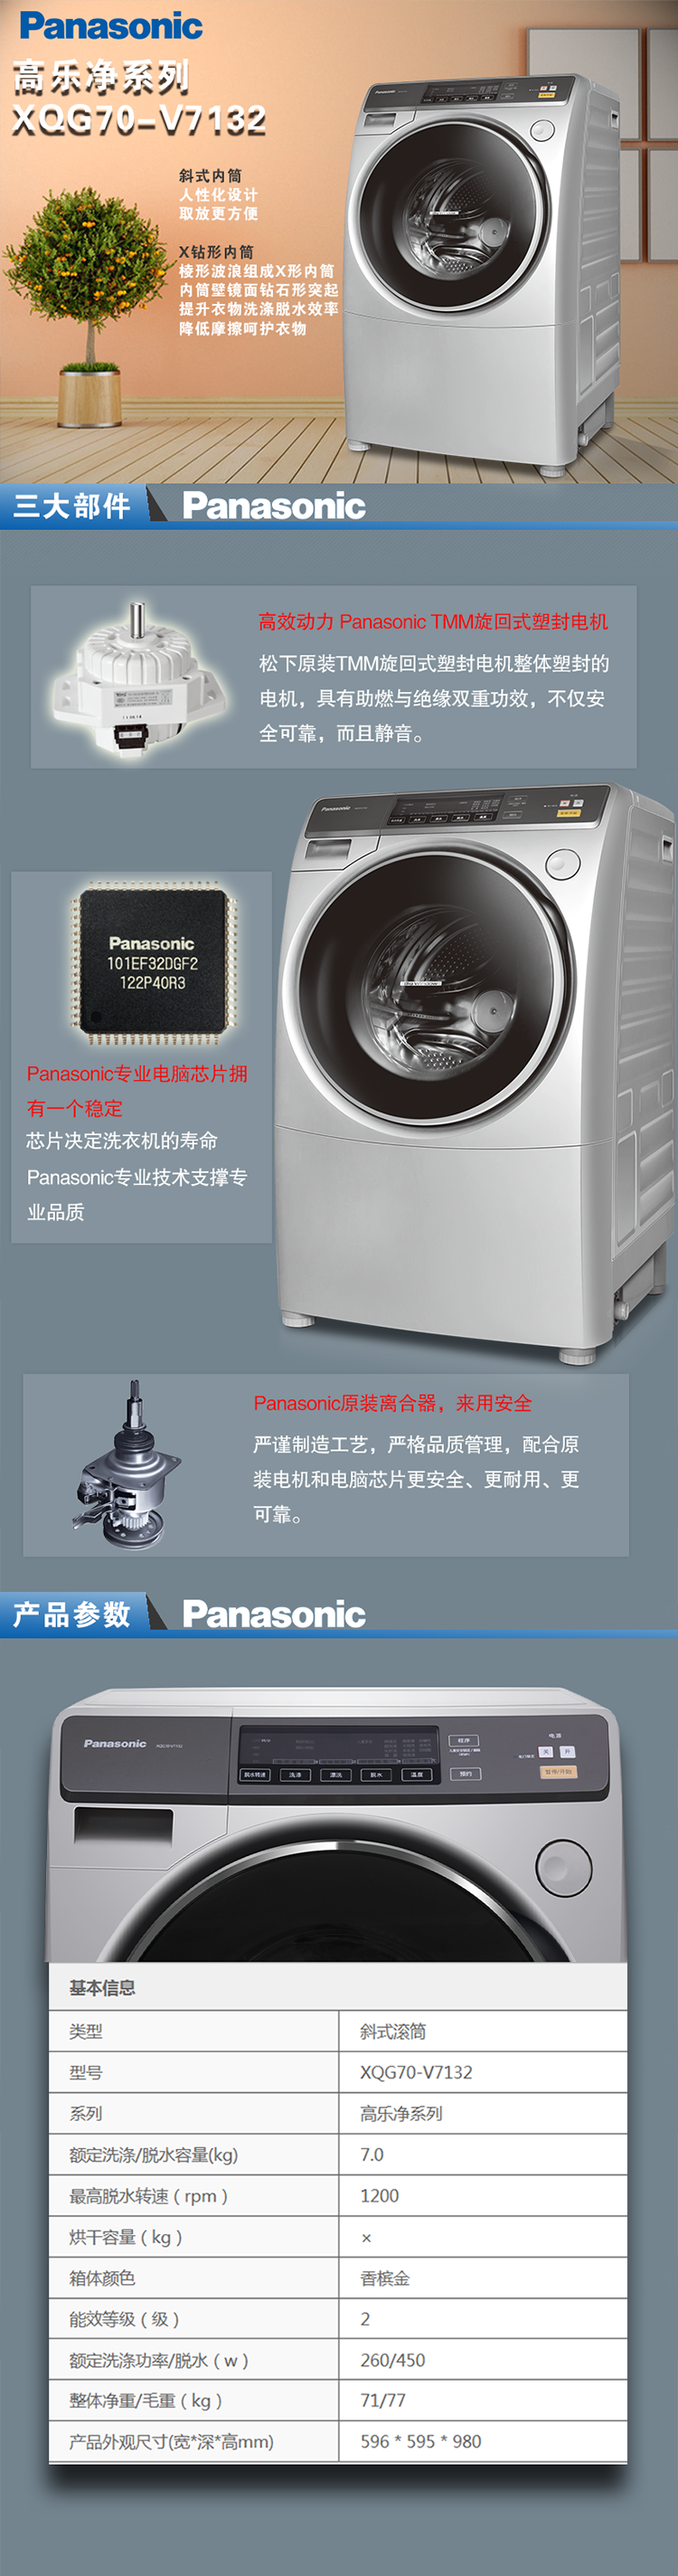 松下(panasonic)xqg70-v7132 7kg全自动滚筒洗衣机